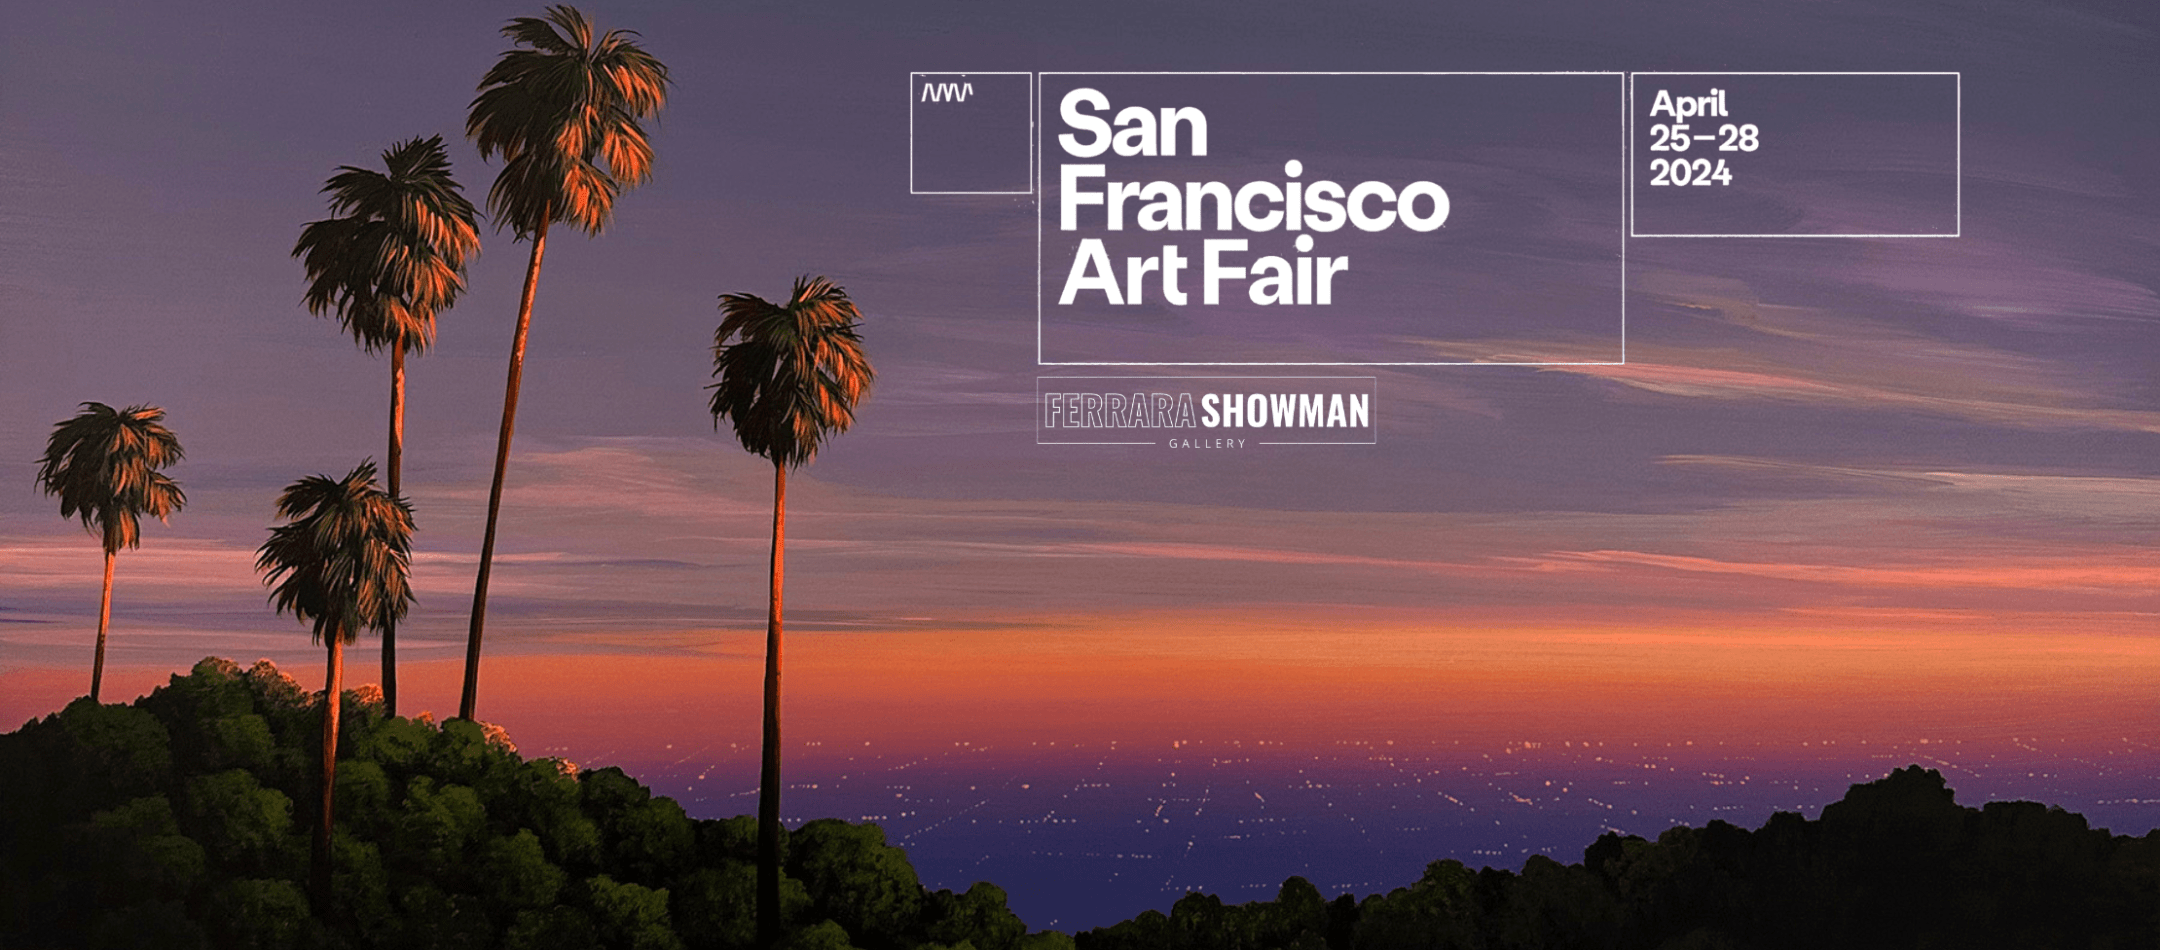 SAN FRANCISCO ART FAIR